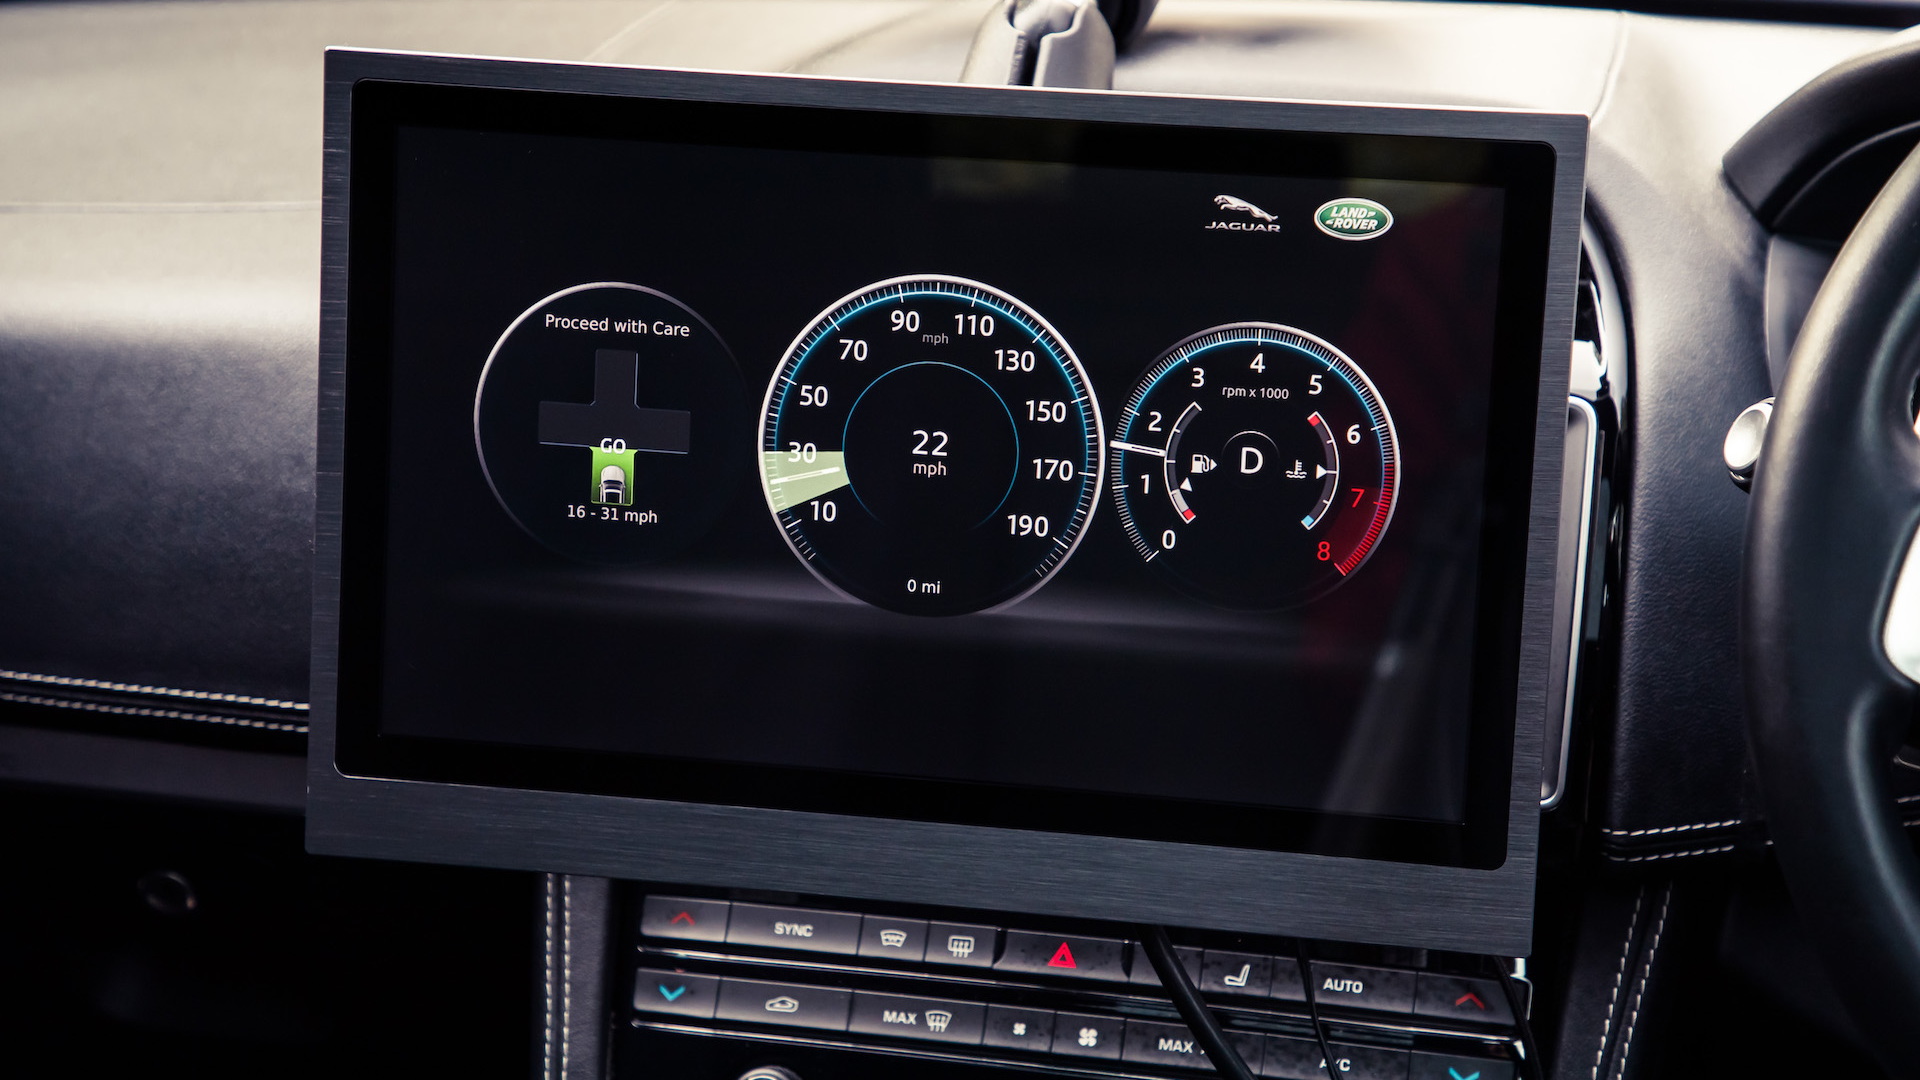 Jaguar-Land Rover Green Light Optimal Speed Advisory system